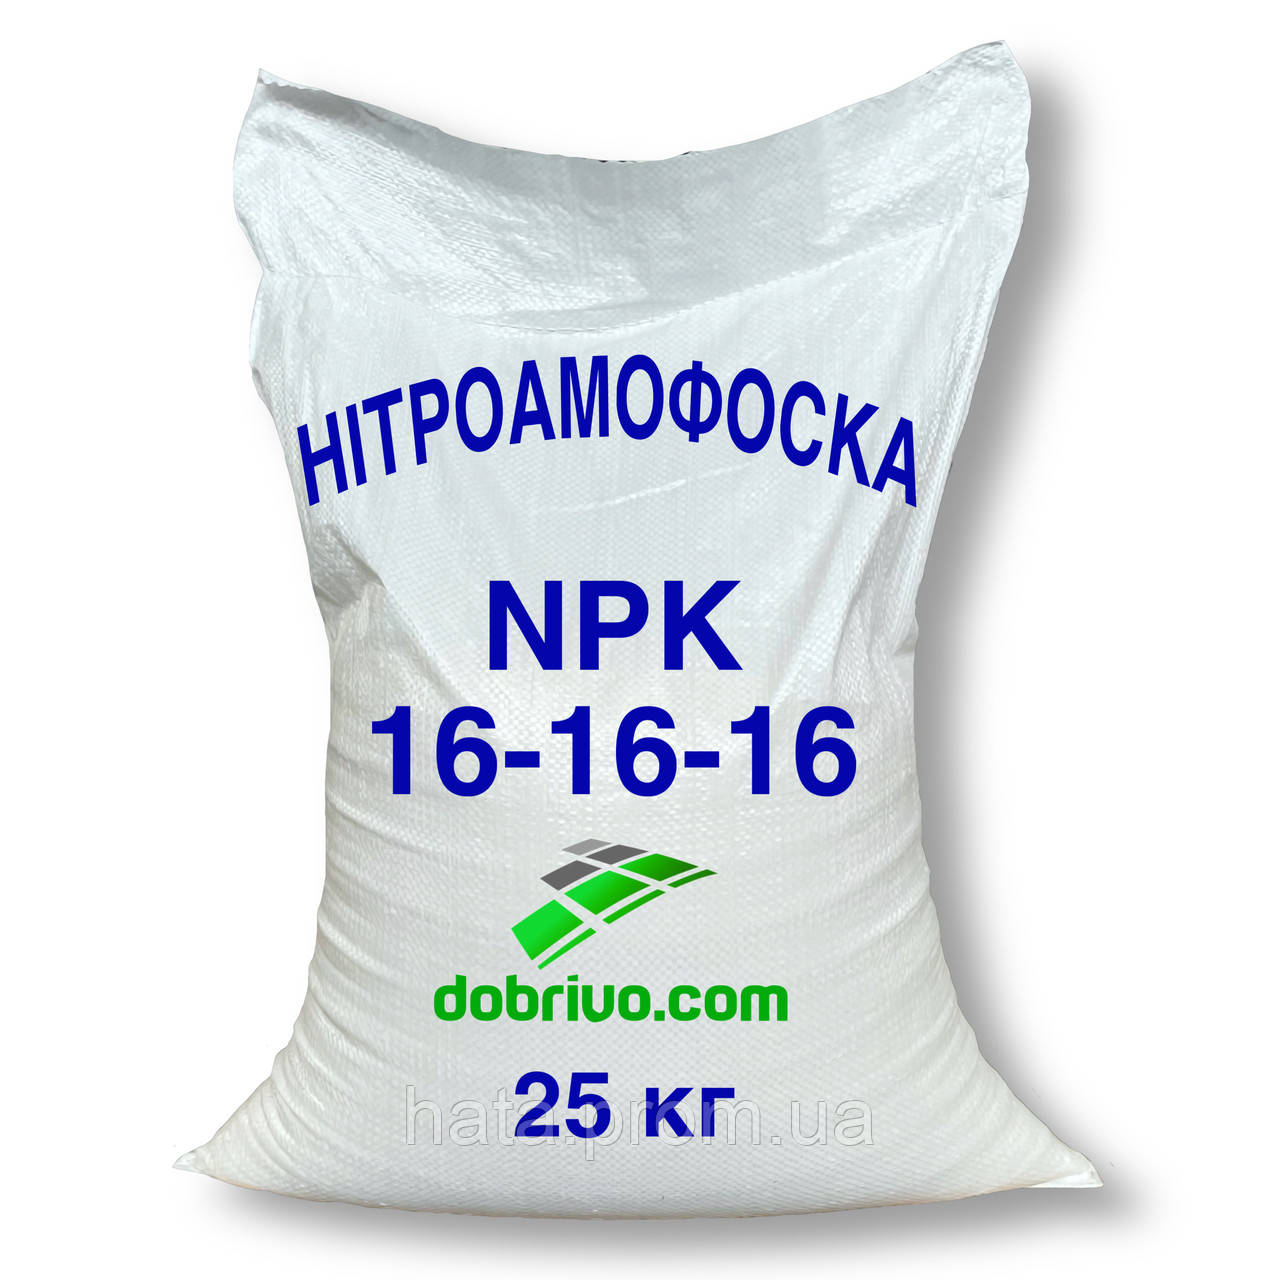 Нітроамофоска NPK:16-16-16, мішок 25 кг, Комплексне мінеральне добриво